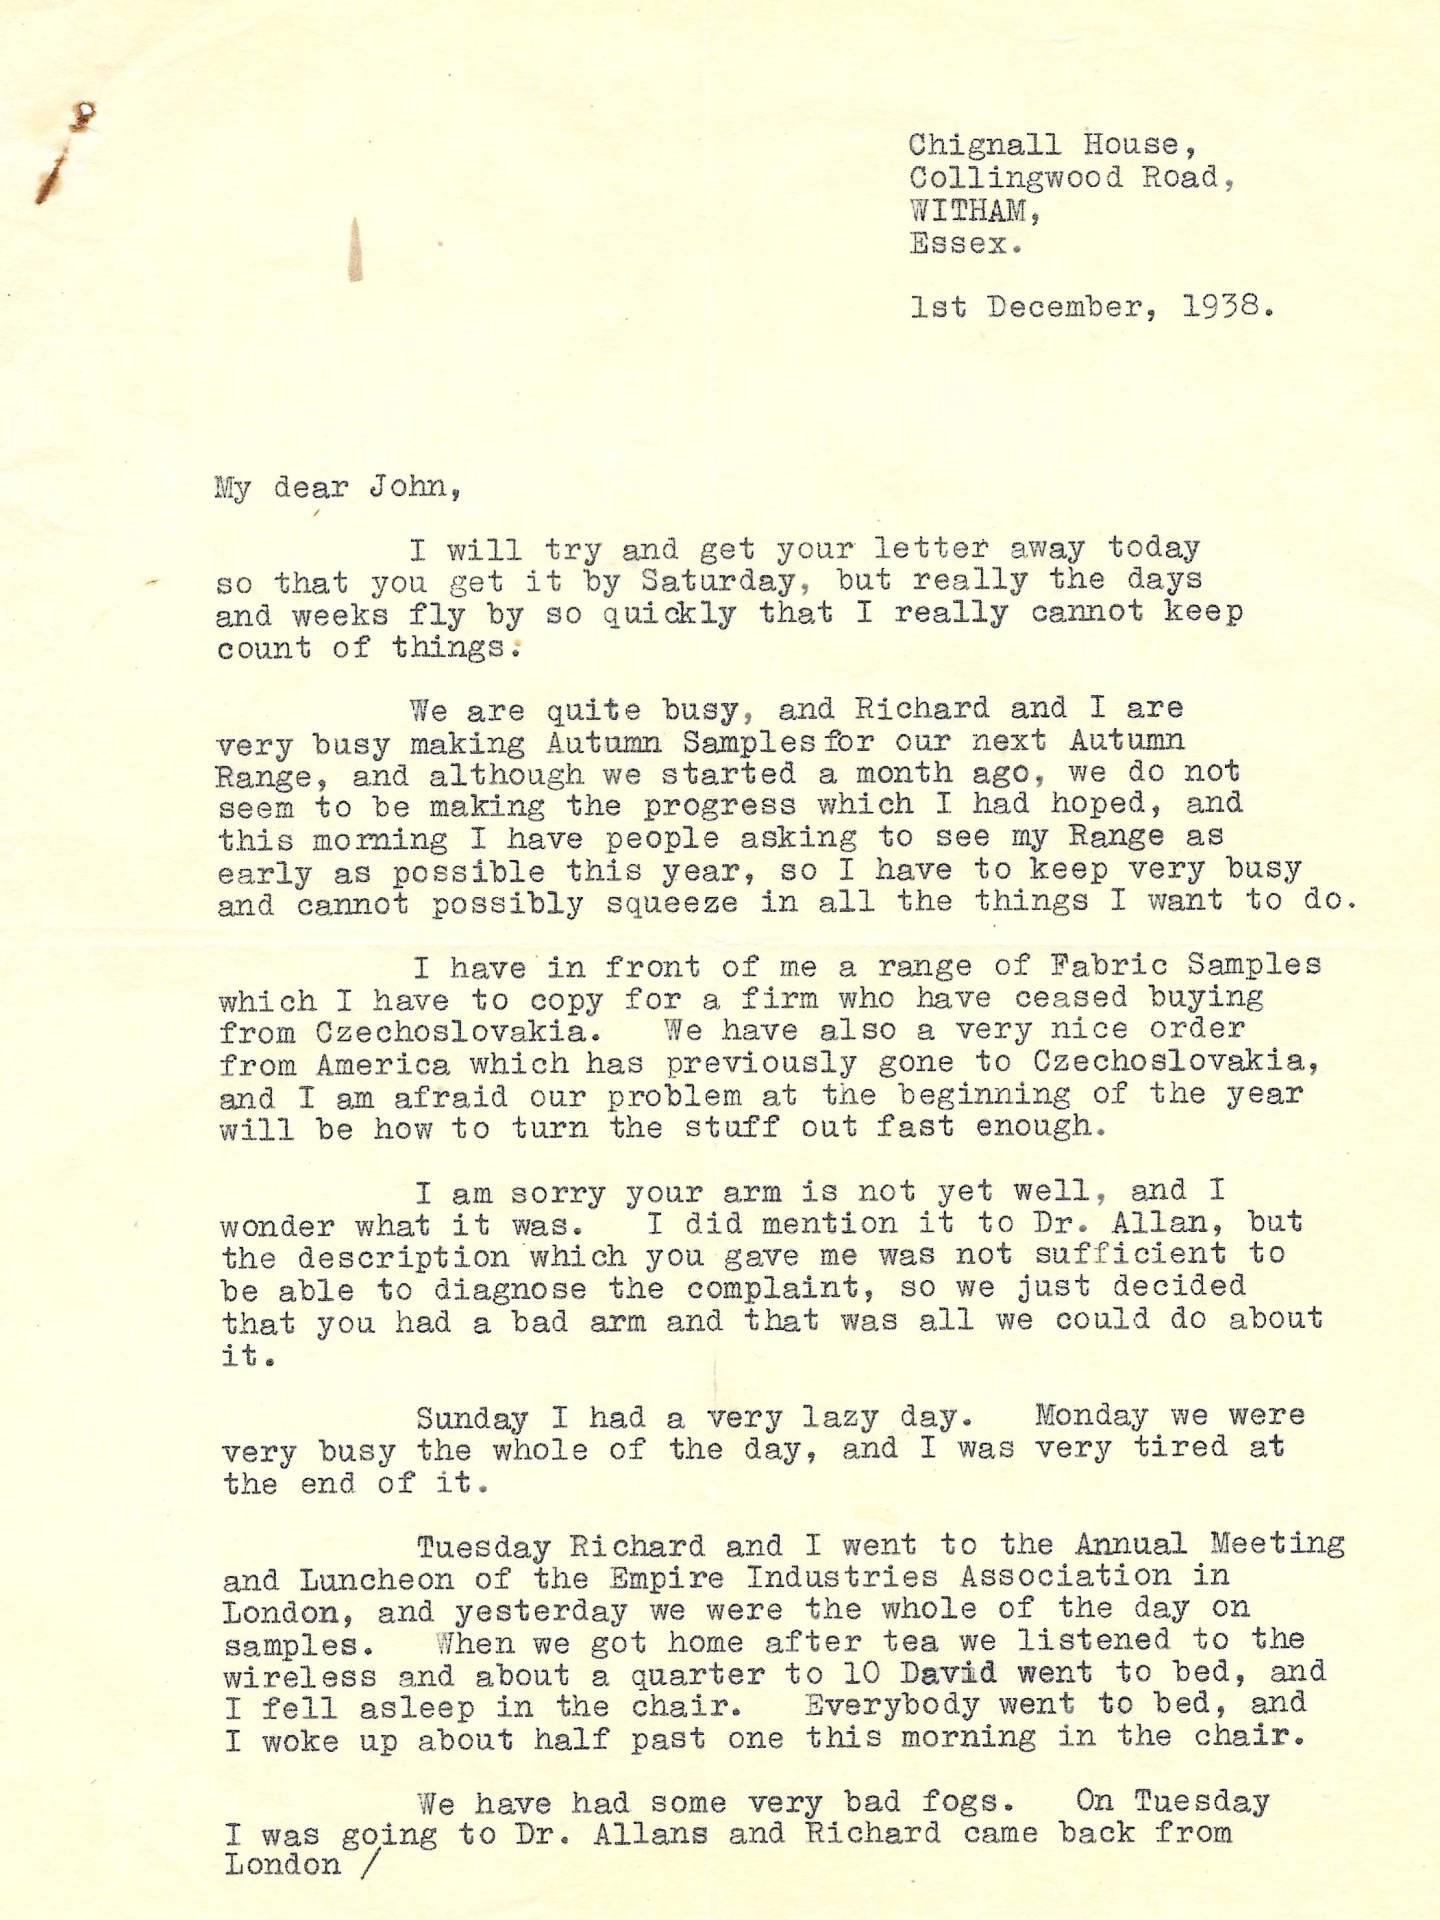 Leslie's letter to John 1st December 1938